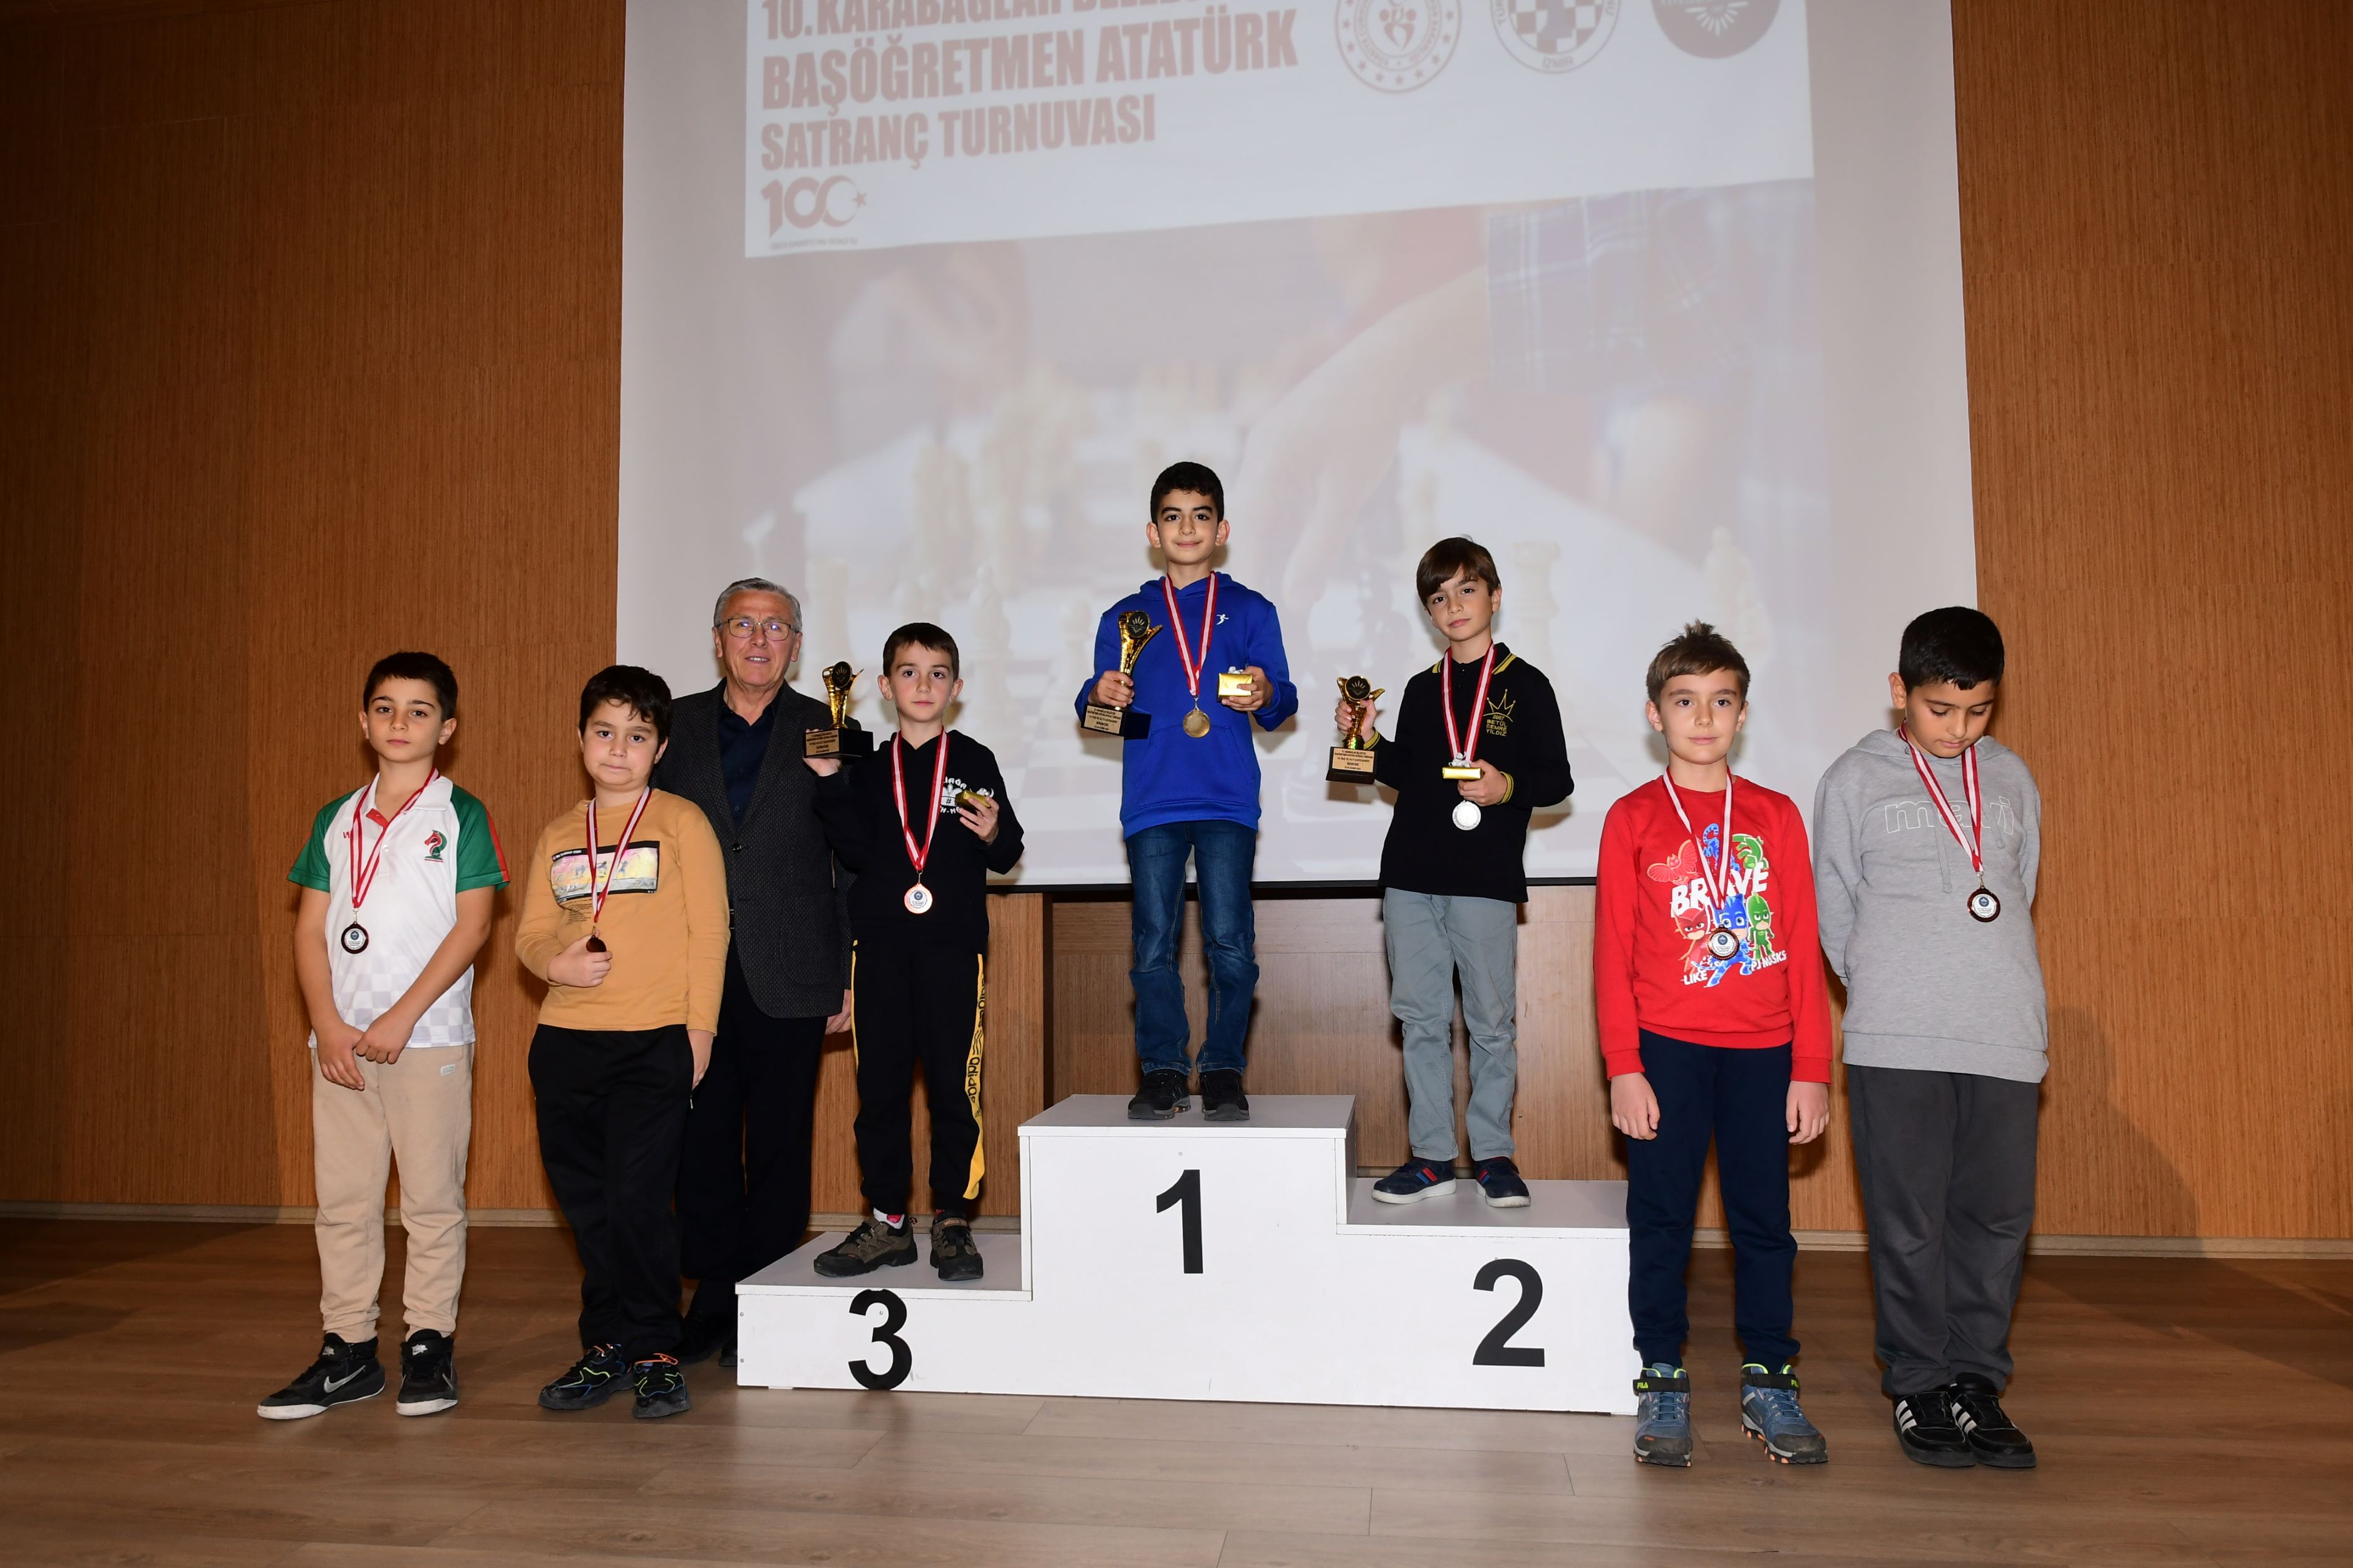 karabağlar belediyesi başöğretmen satranç turnuvası 6